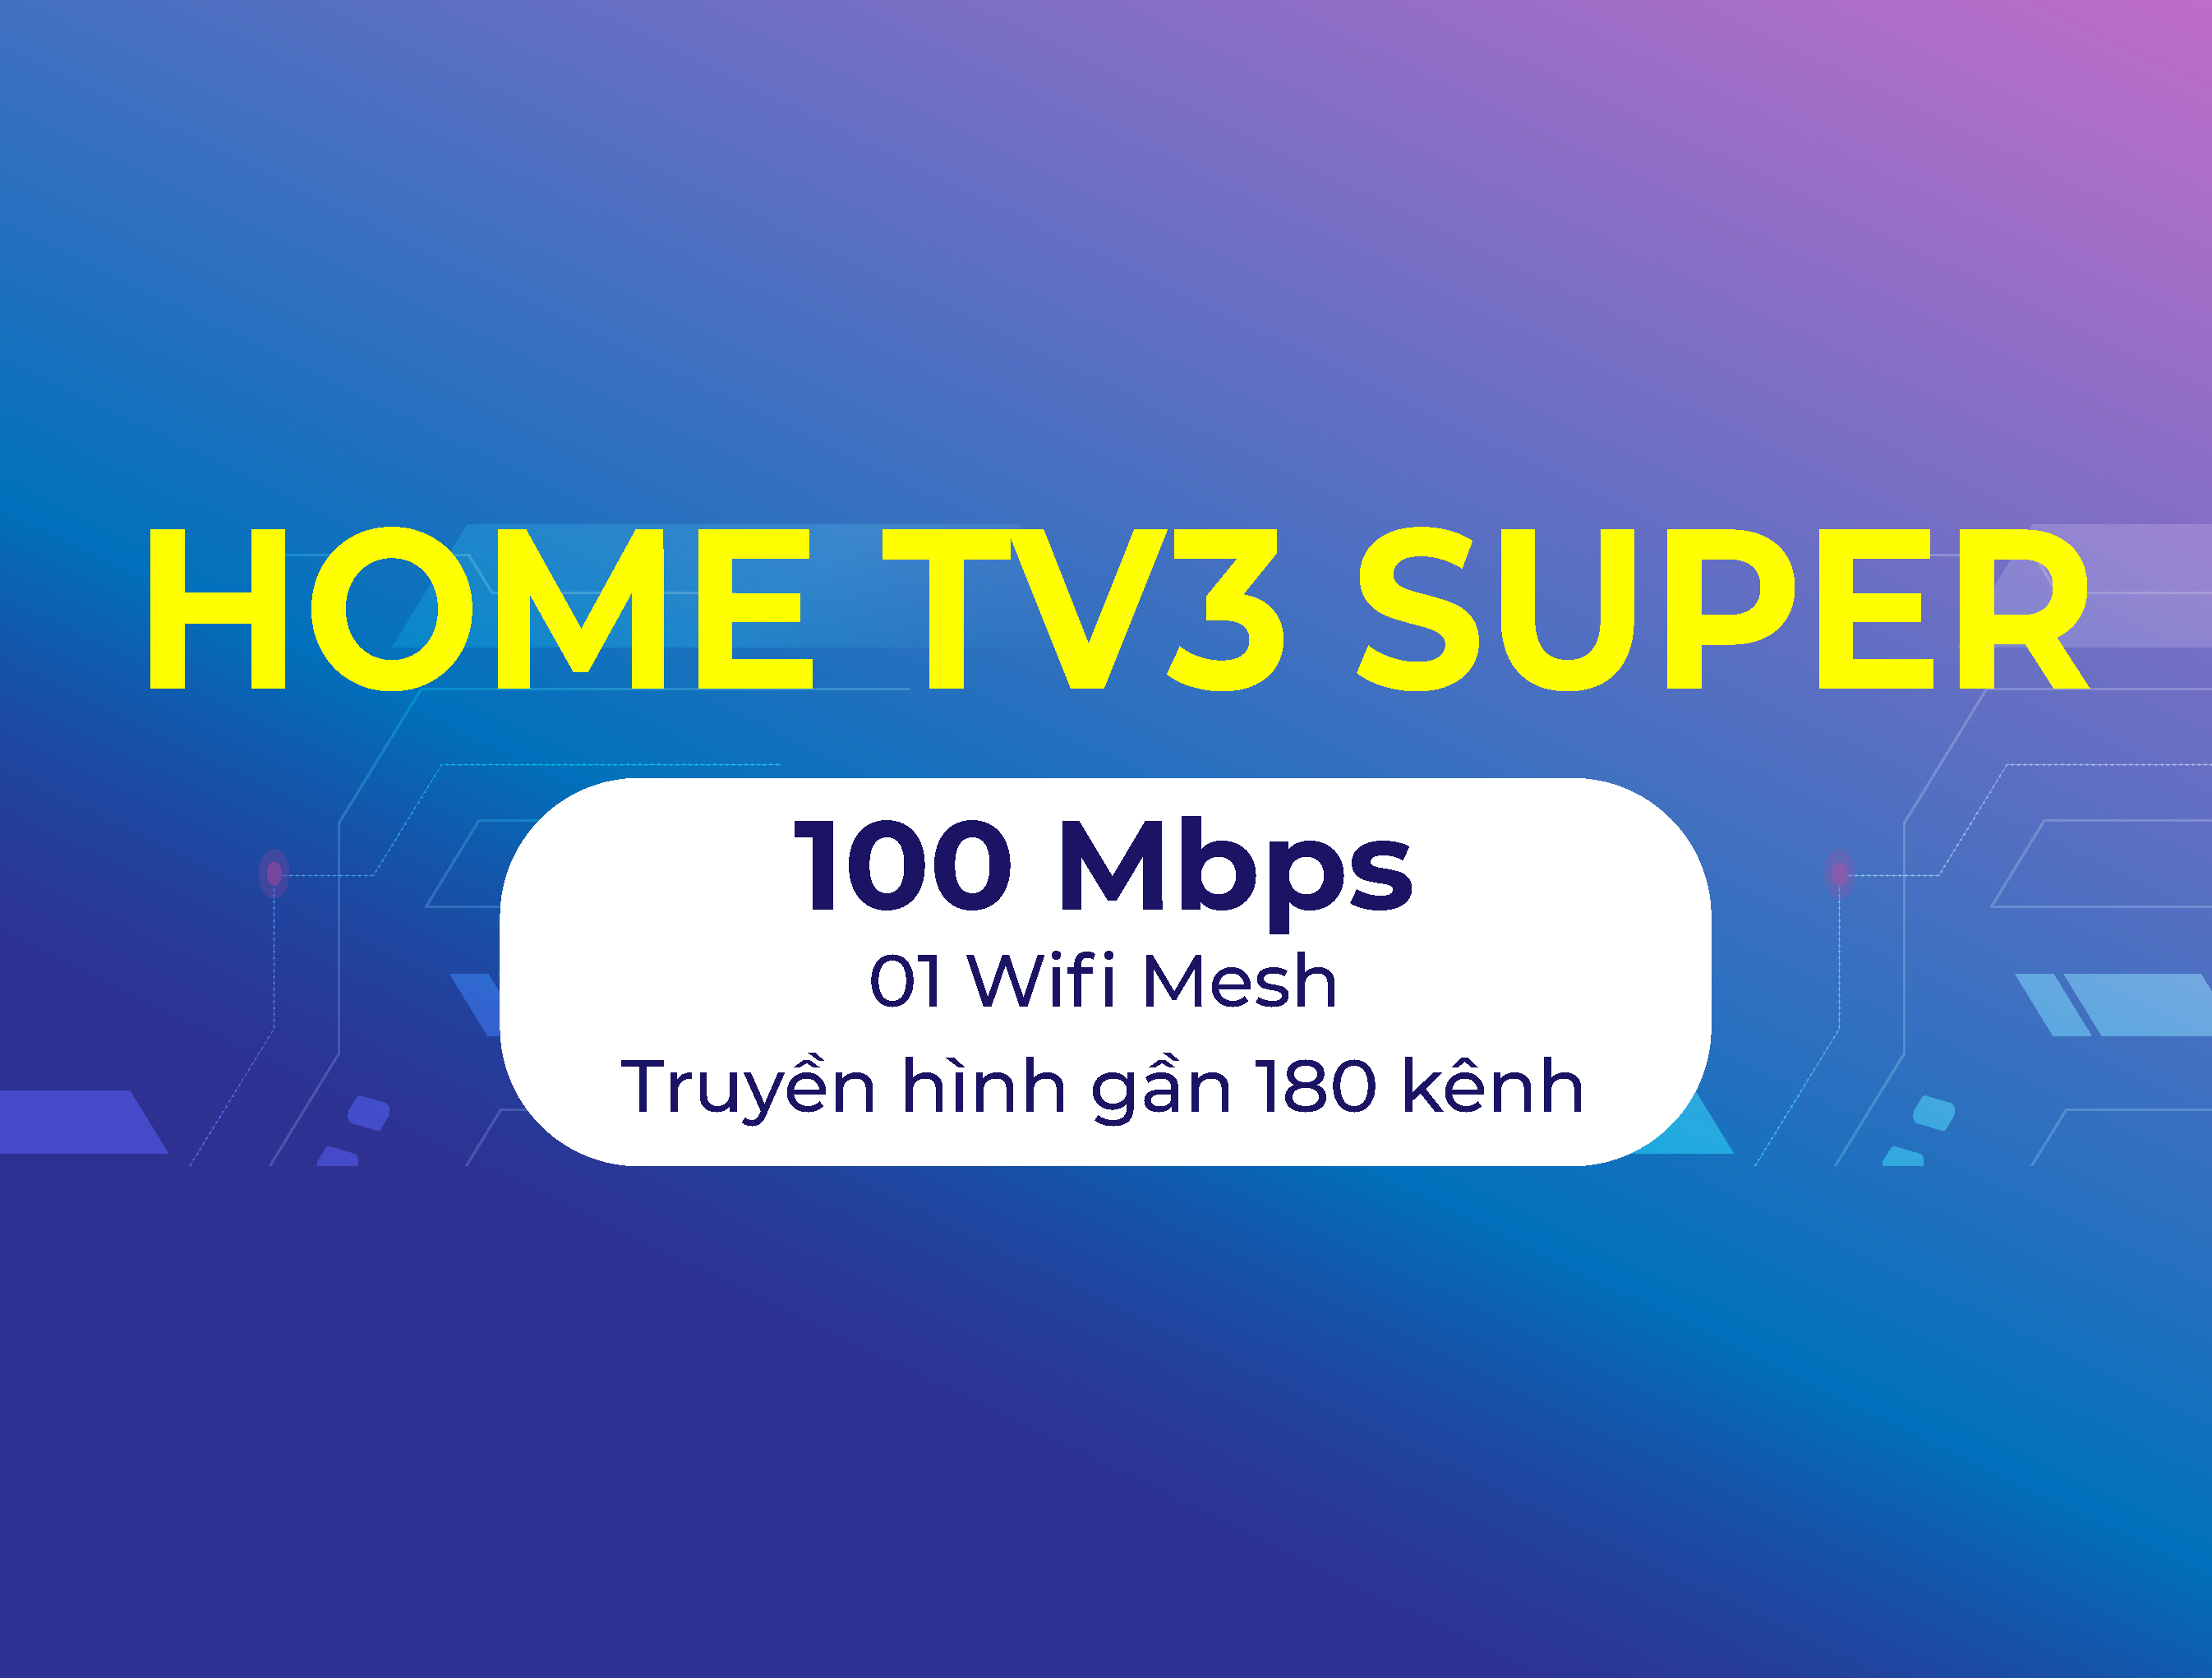 Home TV3 Super